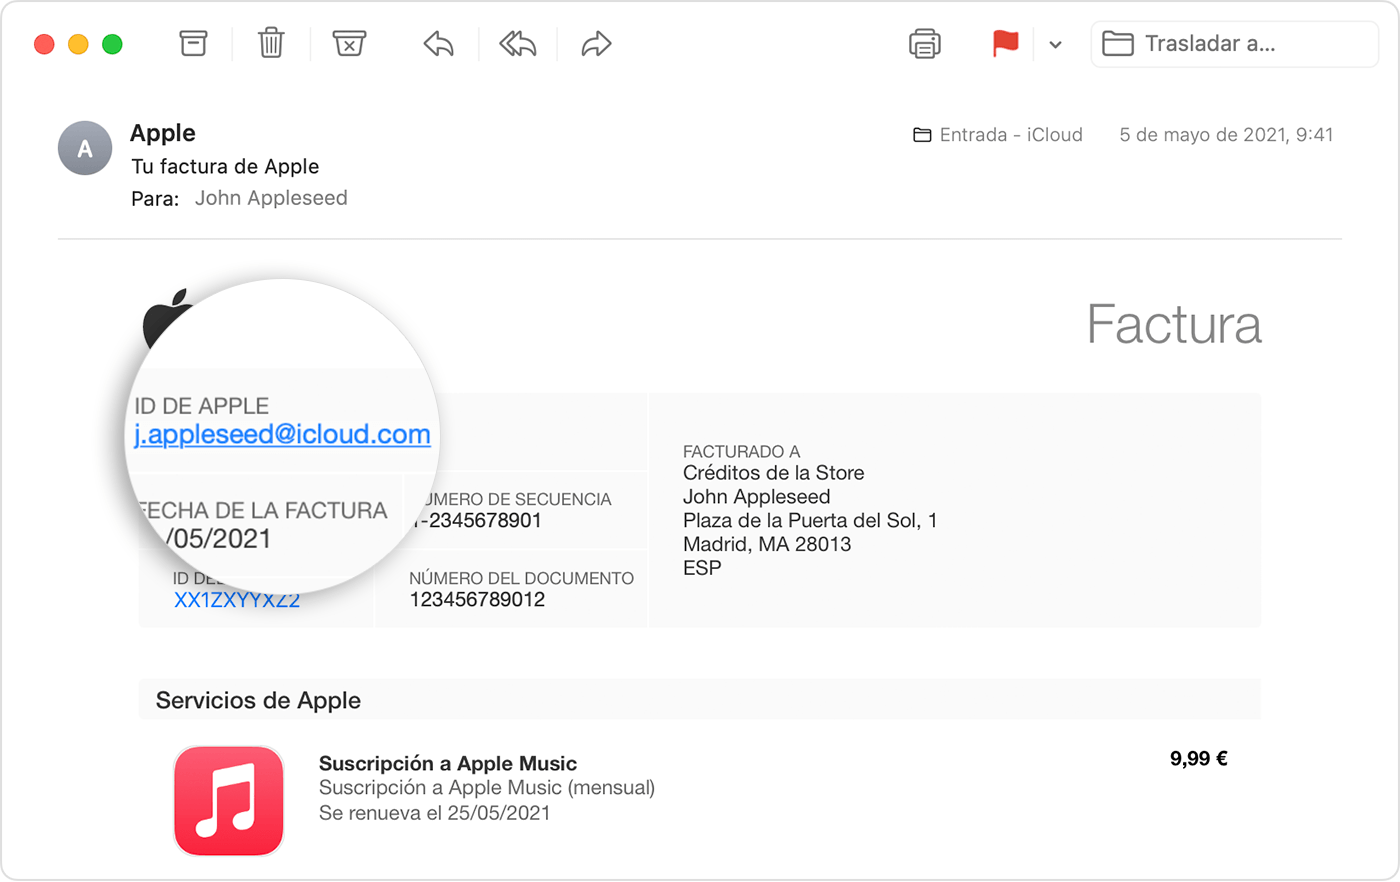 Factura por correo electrónico de Apple que muestra el ID de Apple de la persona que compró la suscripción a Apple Music.